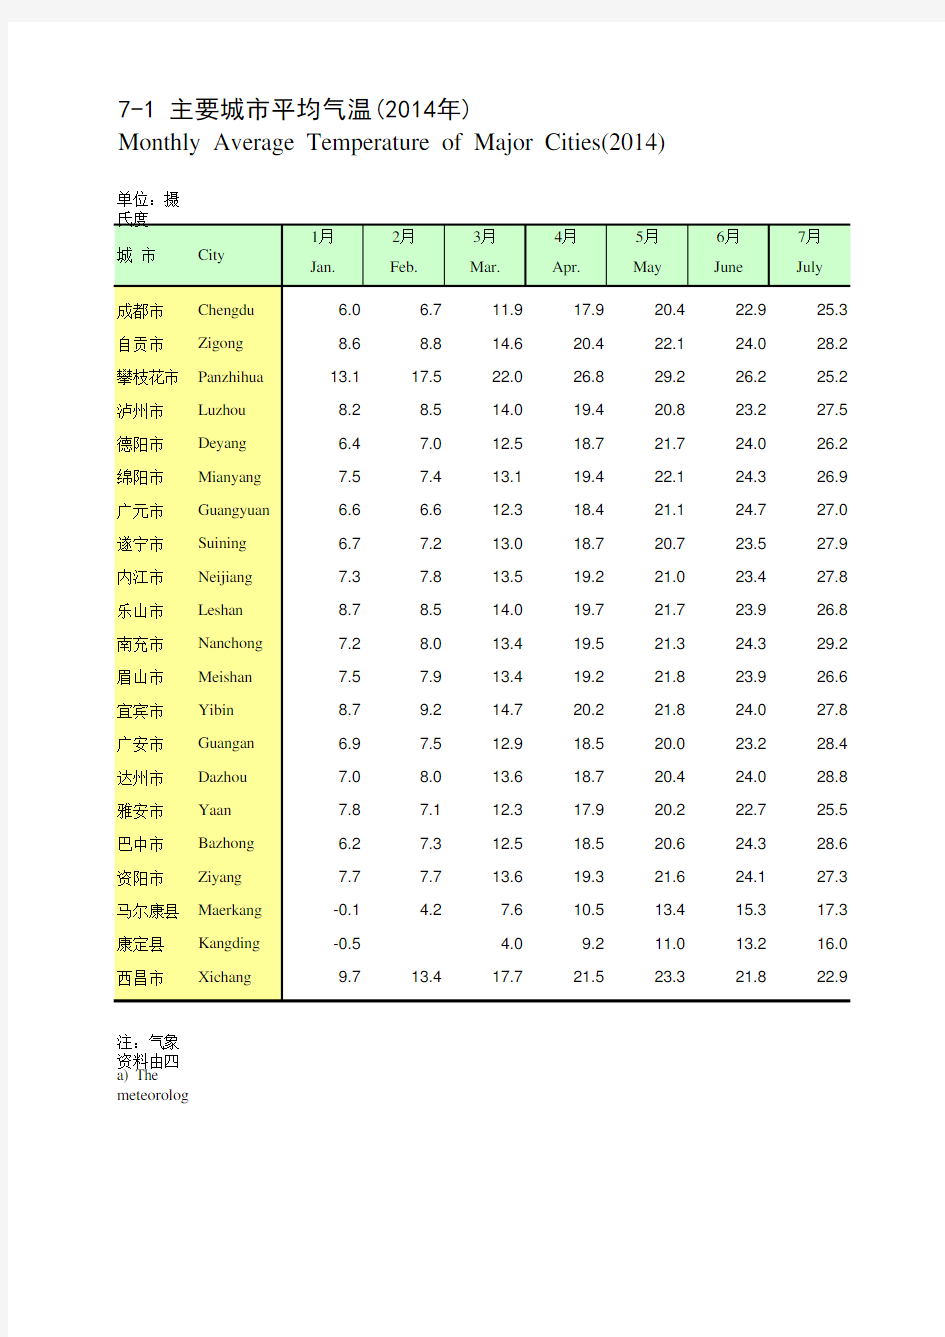 四川统计年鉴2015社会经济发展指标：主要城市平均气温(2014年)